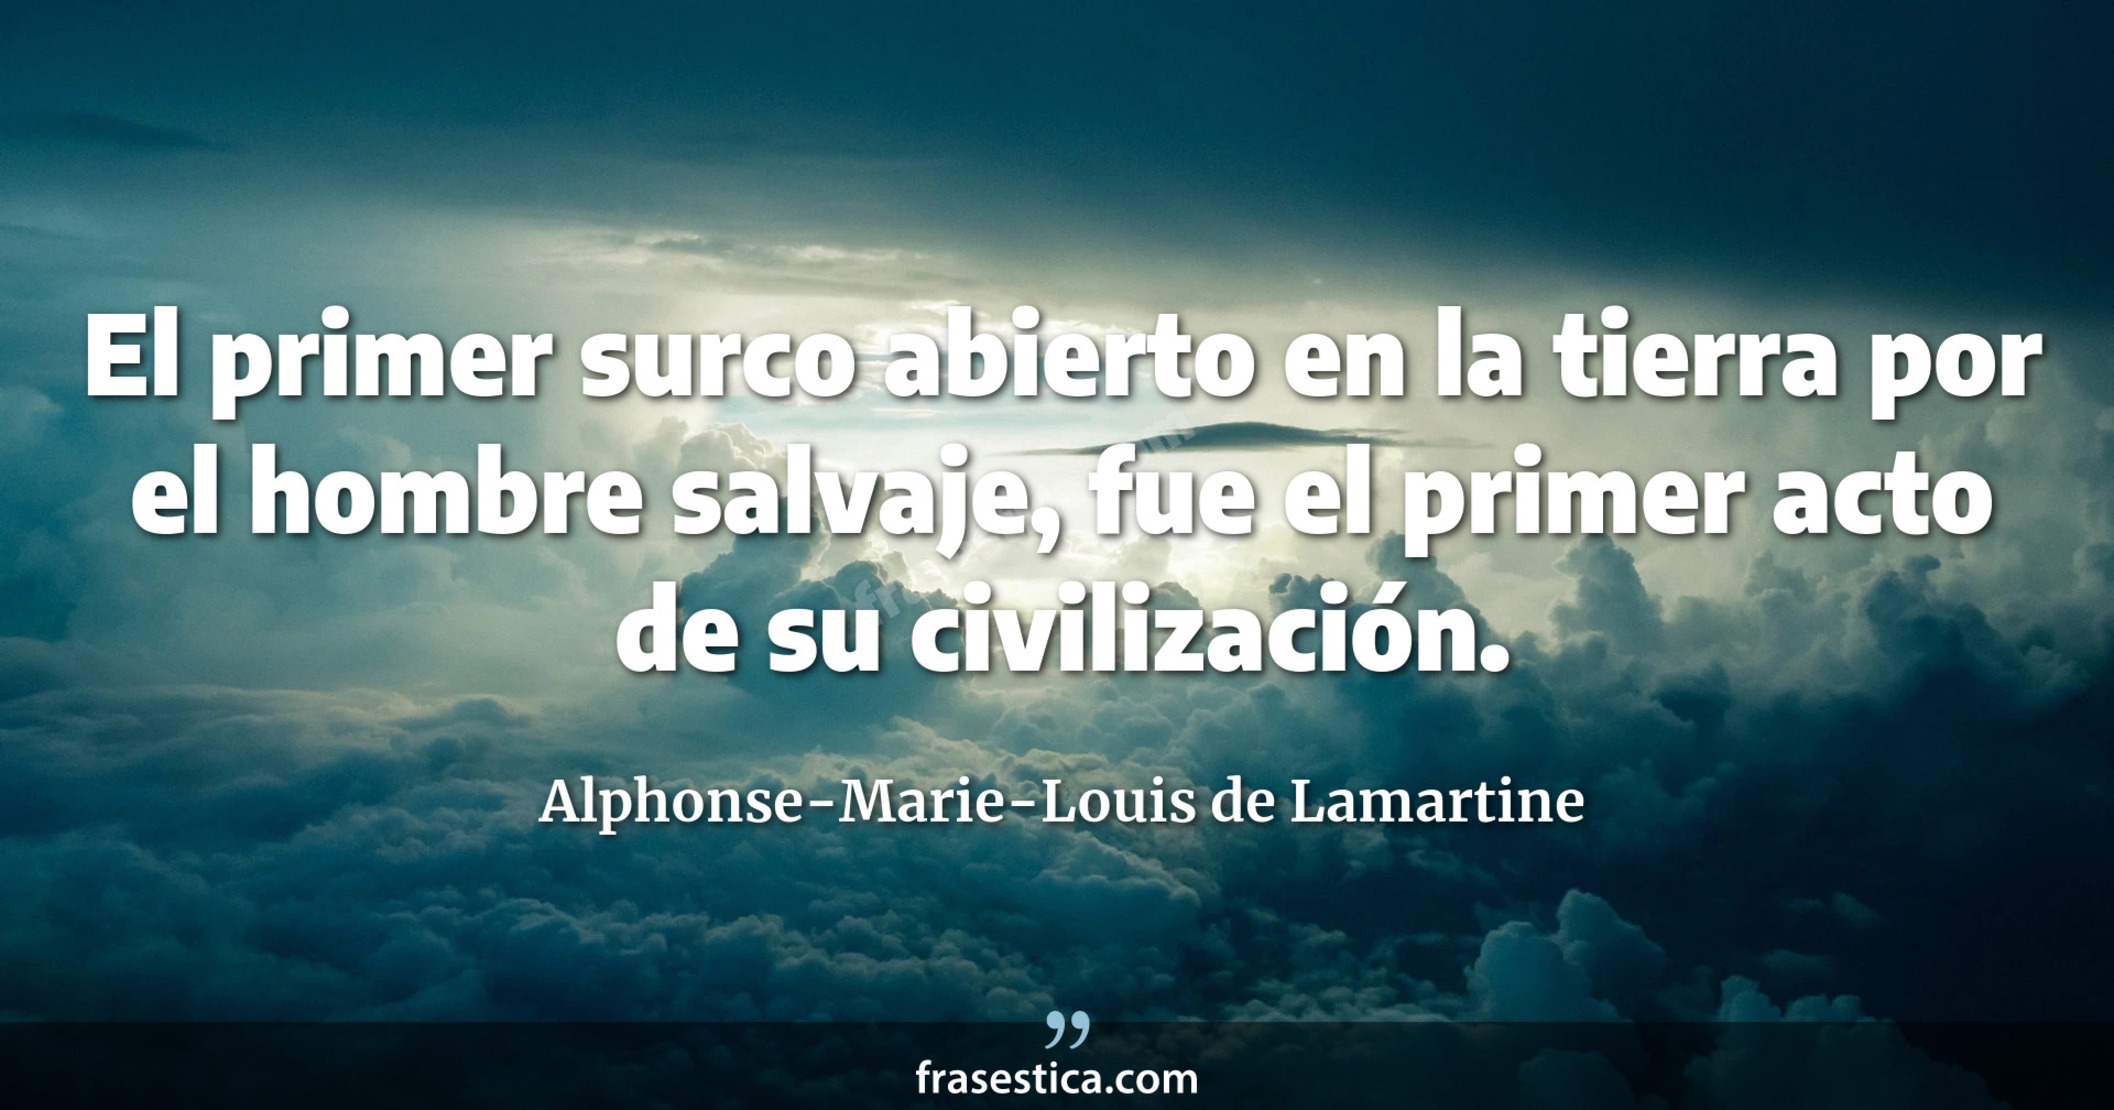 El primer surco abierto en la tierra por el hombre salvaje, fue el primer acto de su civilización. - Alphonse-Marie-Louis de Lamartine